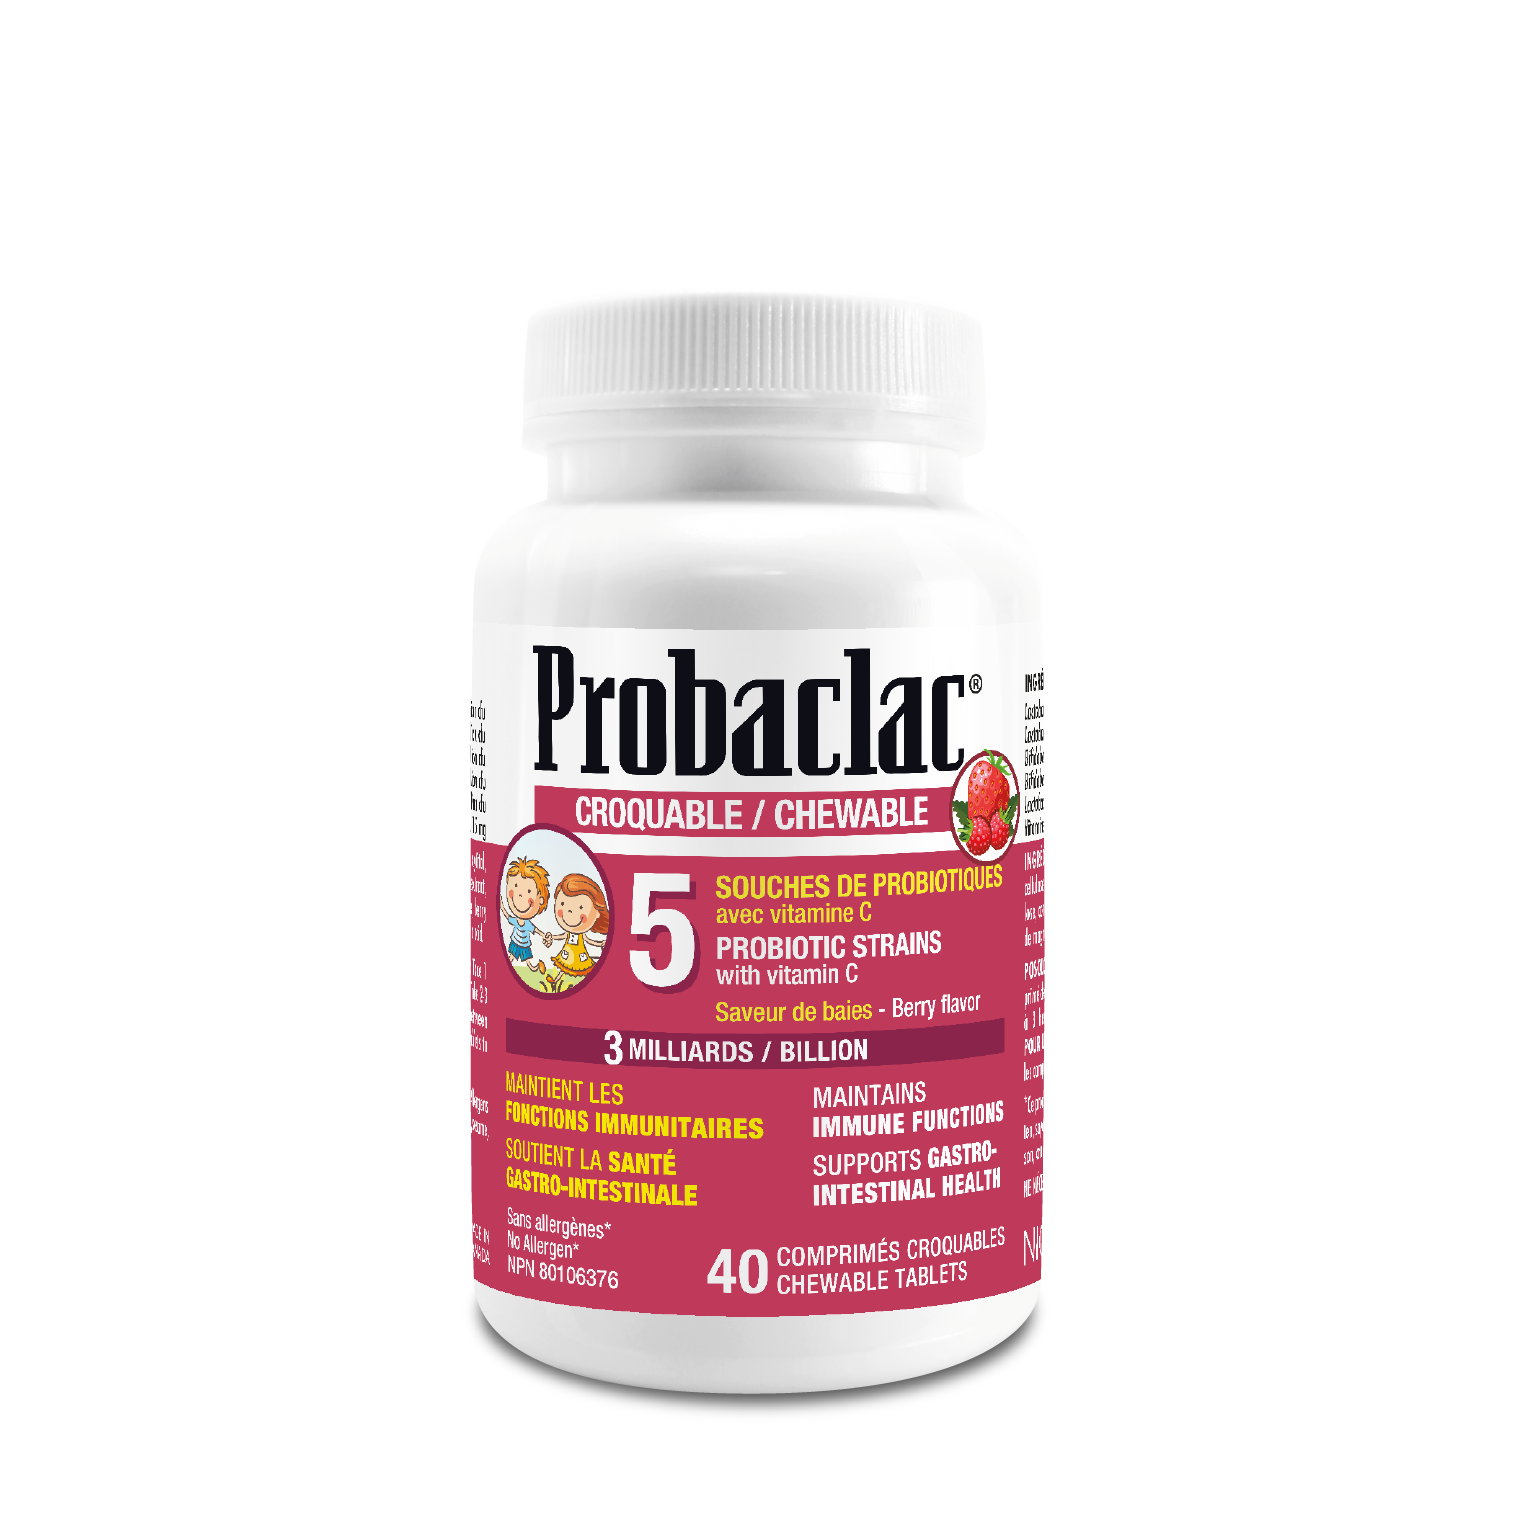 Chewable probiotics for kids Probaclac